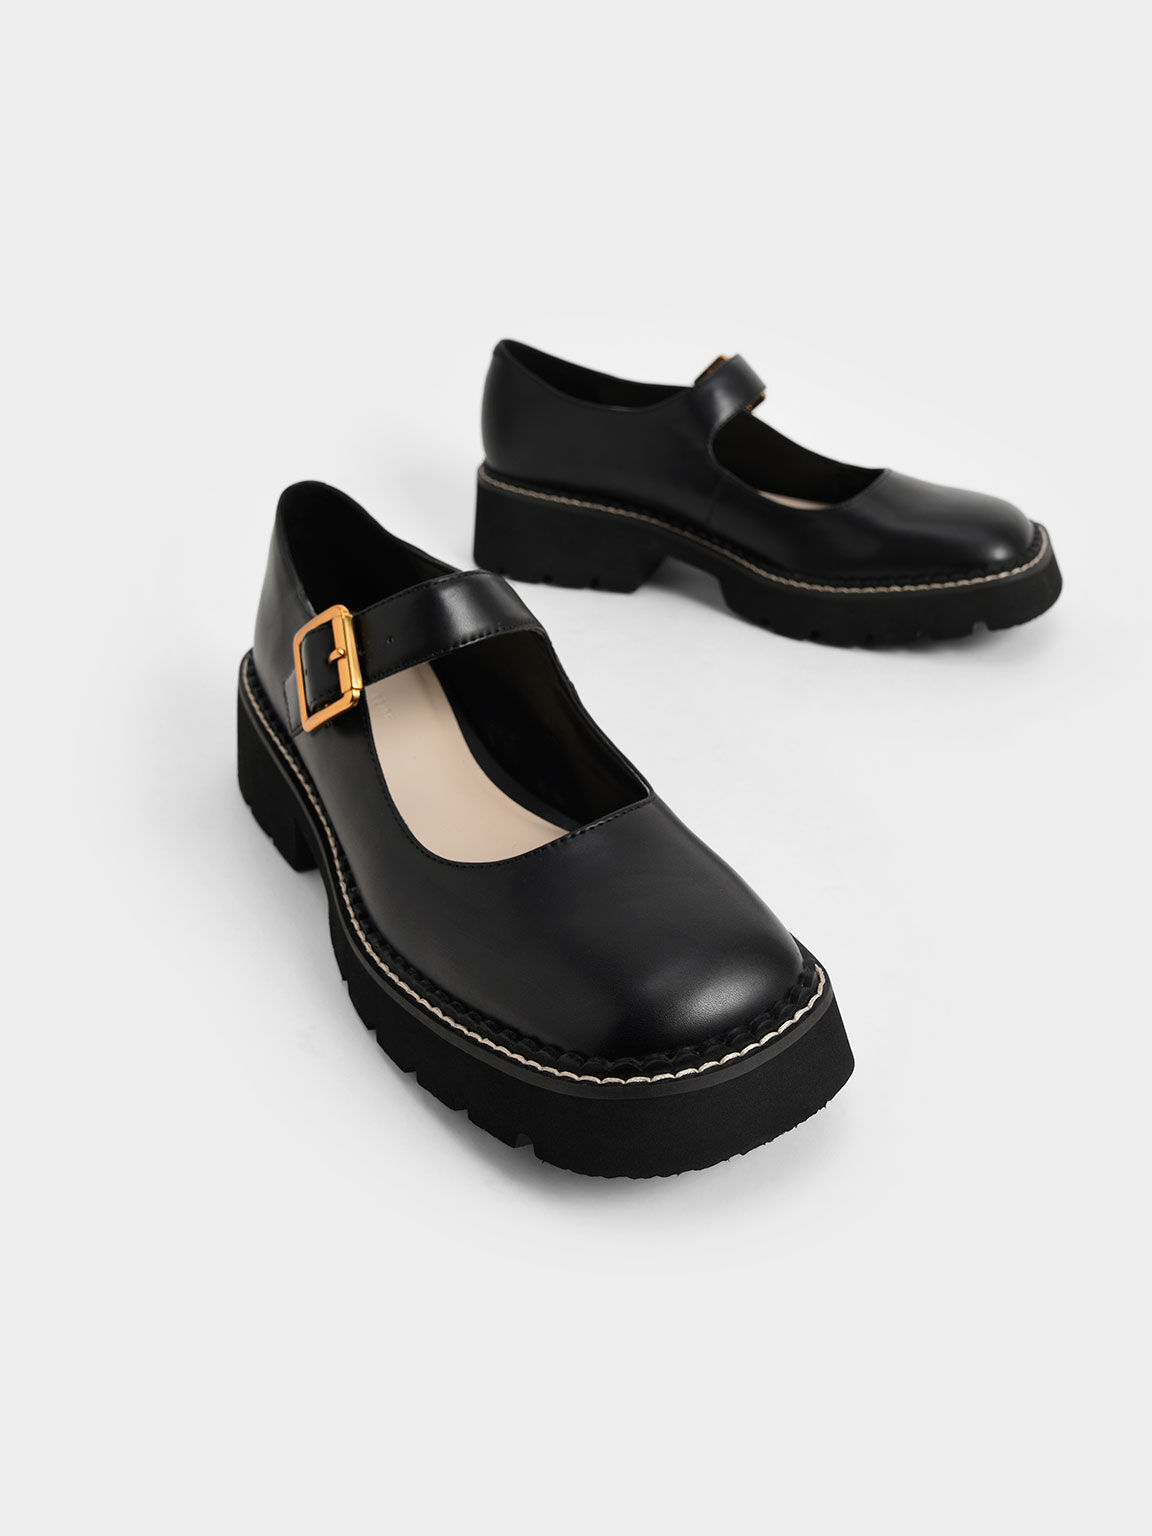 Chaussures Mary Jane à boucle métallique, Noir, hi-res